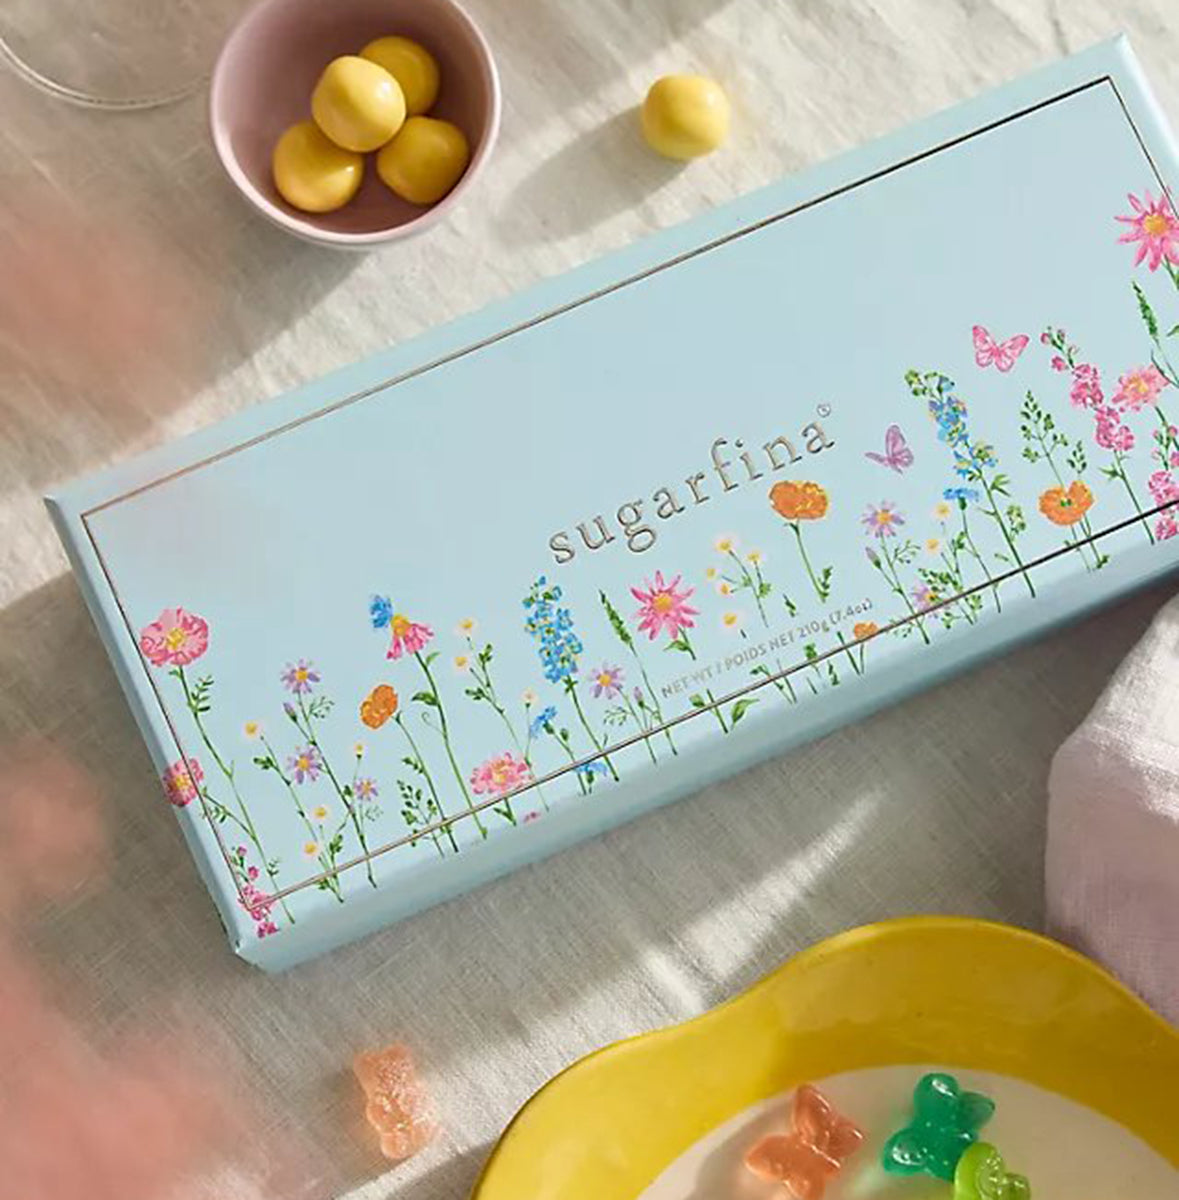 Sugarfina Garden Party 3-Piece Candy Bento Box